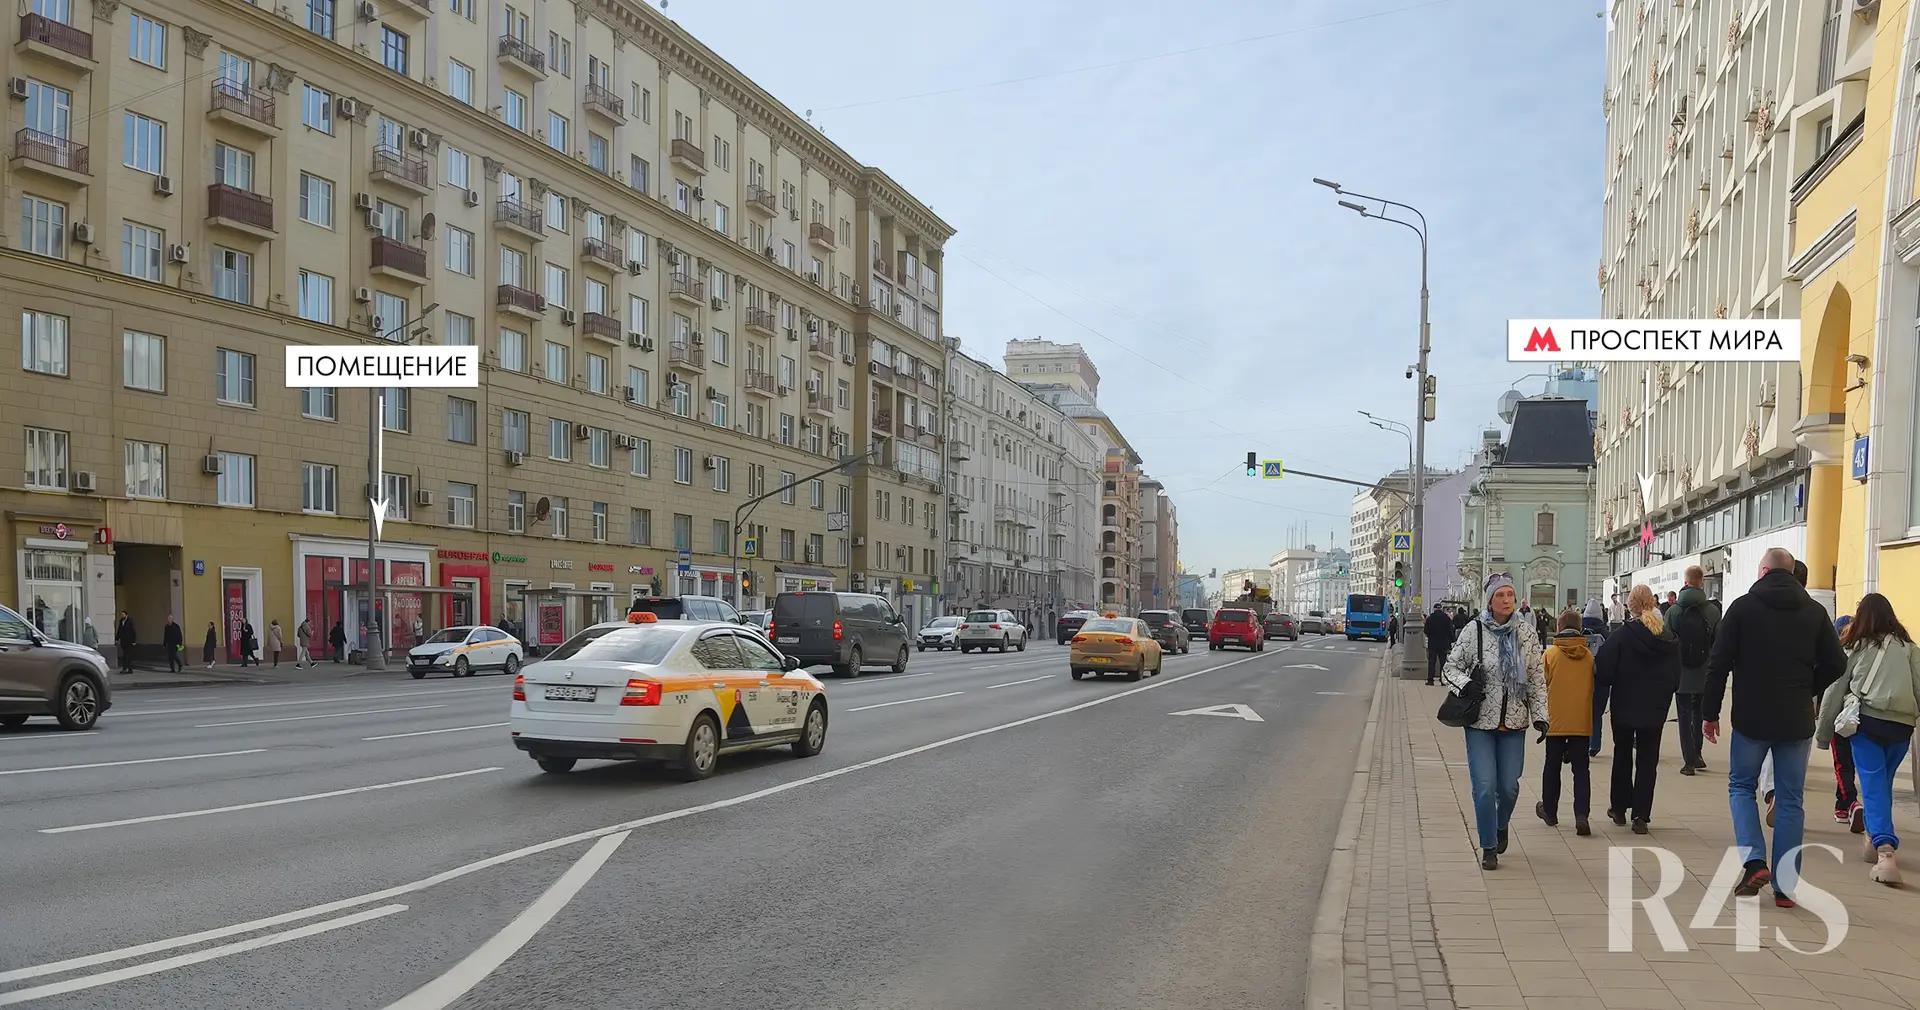 Аренда торговых помещений площадью 15.1 - 84.4 м2 в Москве:  проспект Мира, 48 R4S | Realty4Sale